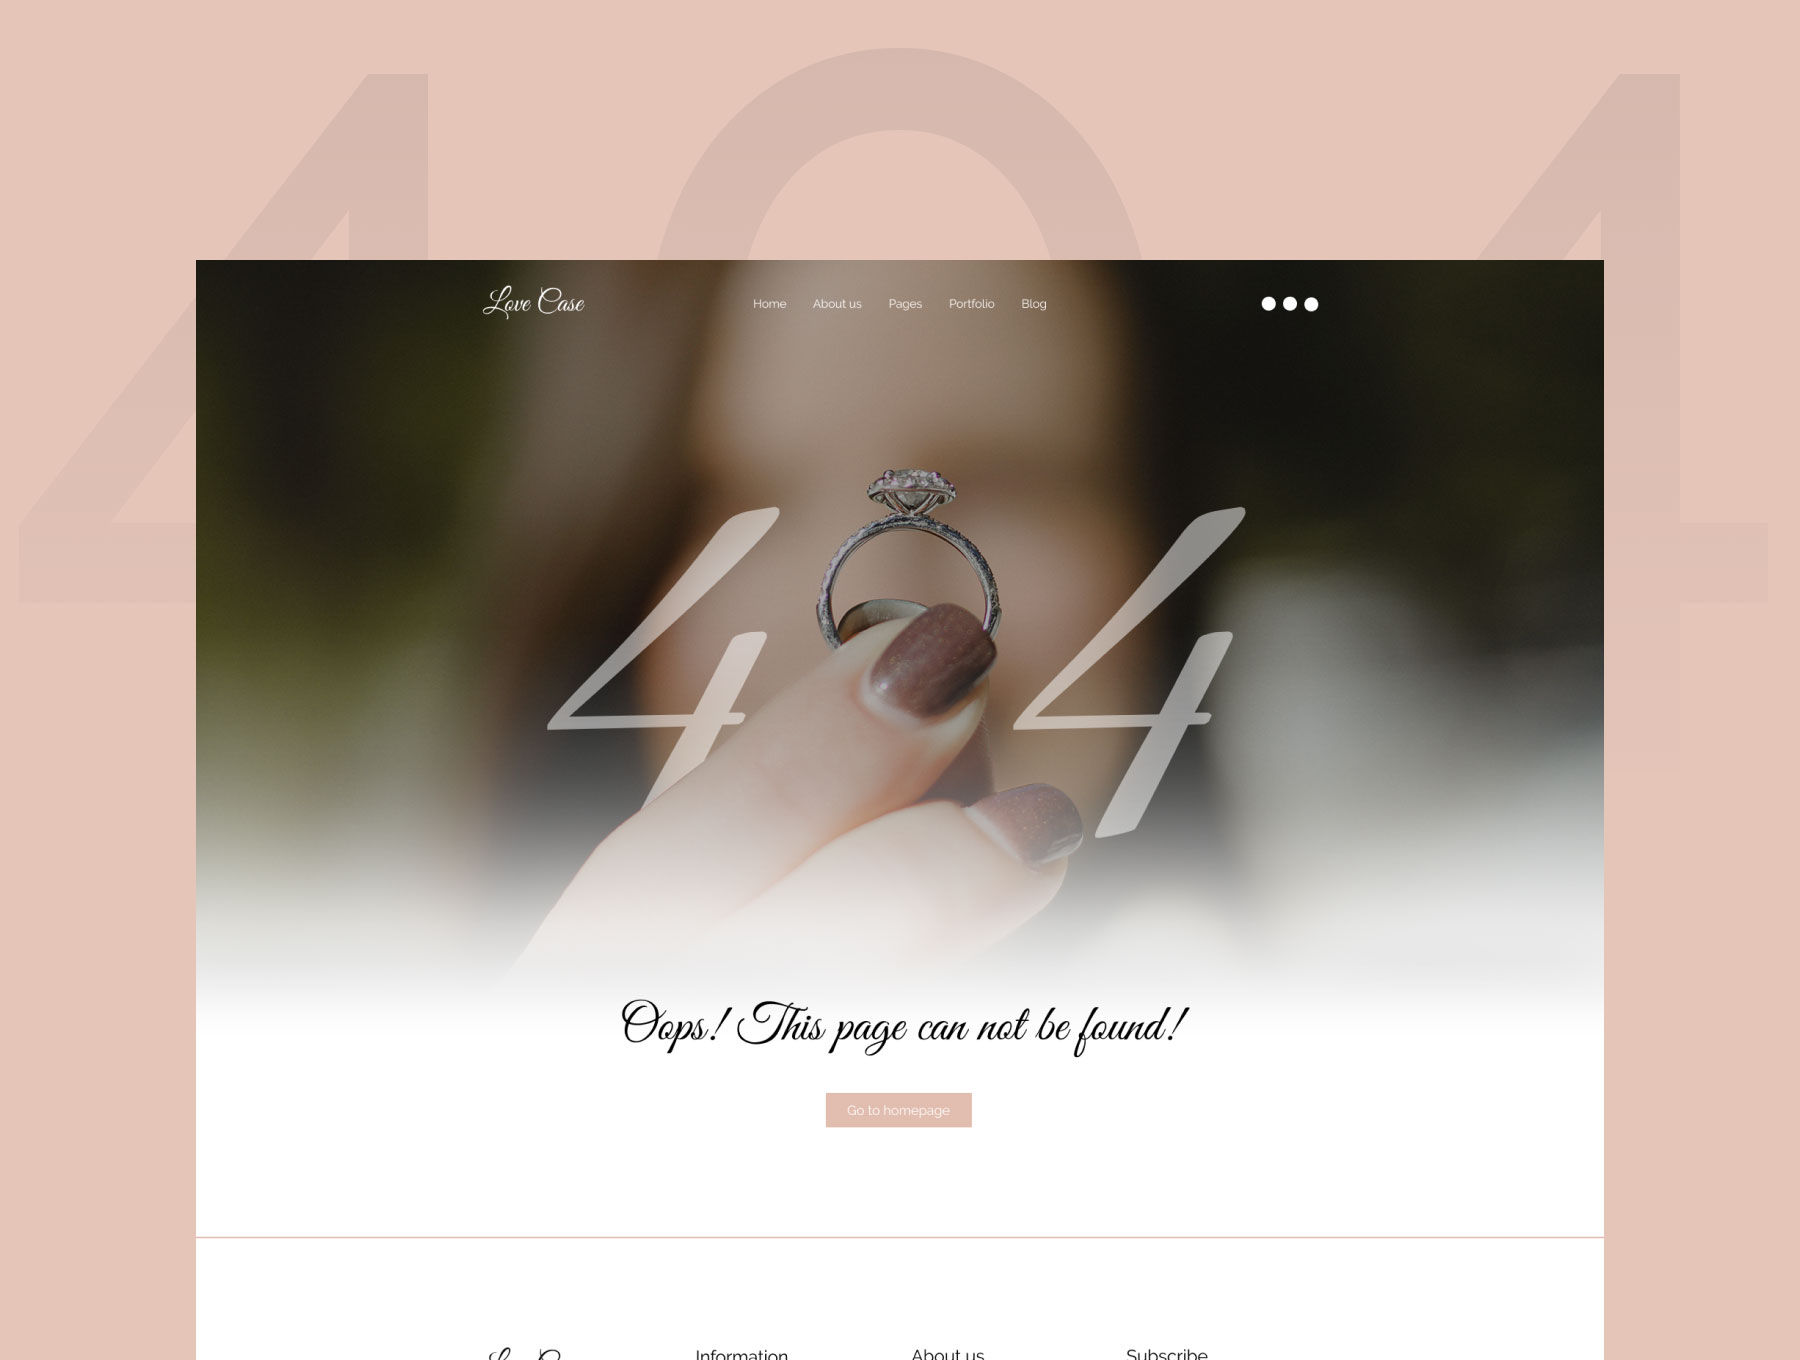 一款恋爱主题的博客WEB UI界面设计 .fig素材